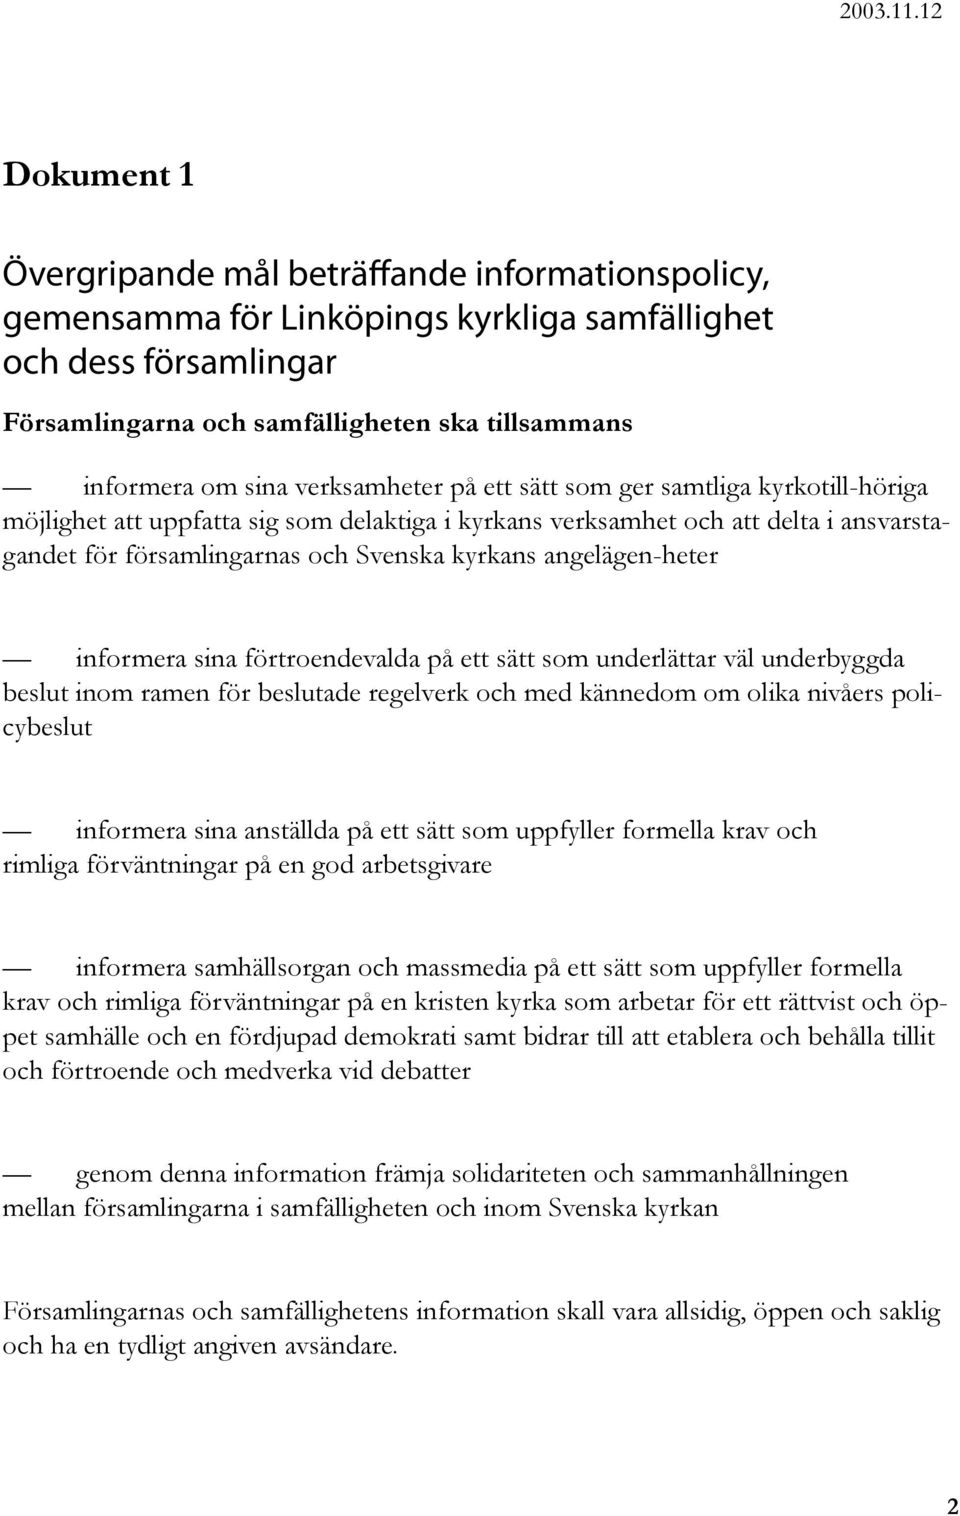 Gemensam informationspolicy för Linköpings kyrkliga samfällighet ...